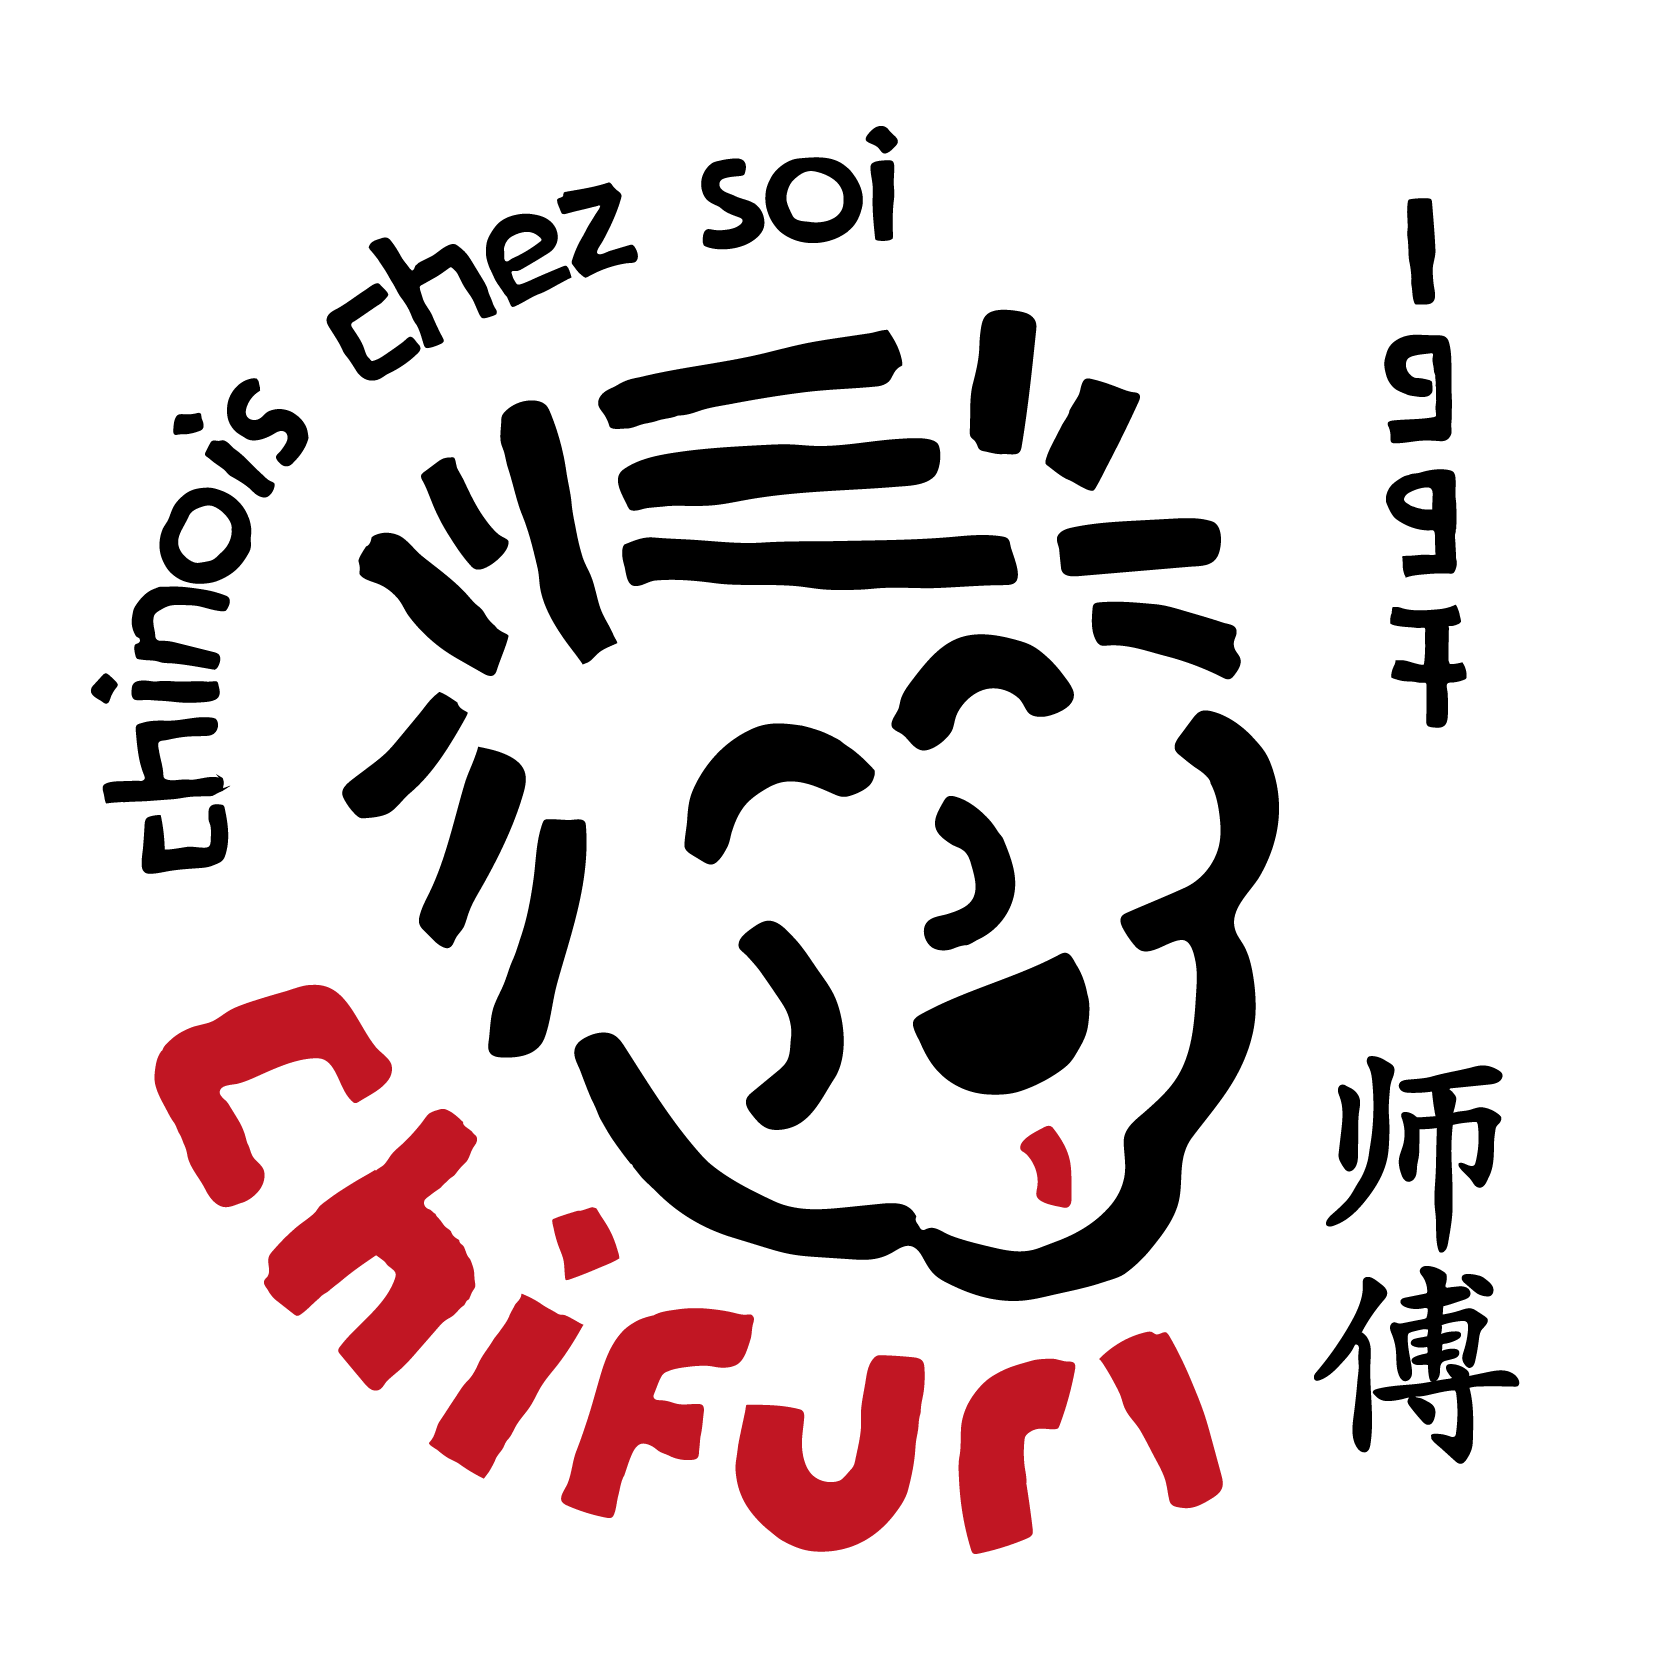 YuEat, yueat, yu.eat, yu eat: Chifuri logo